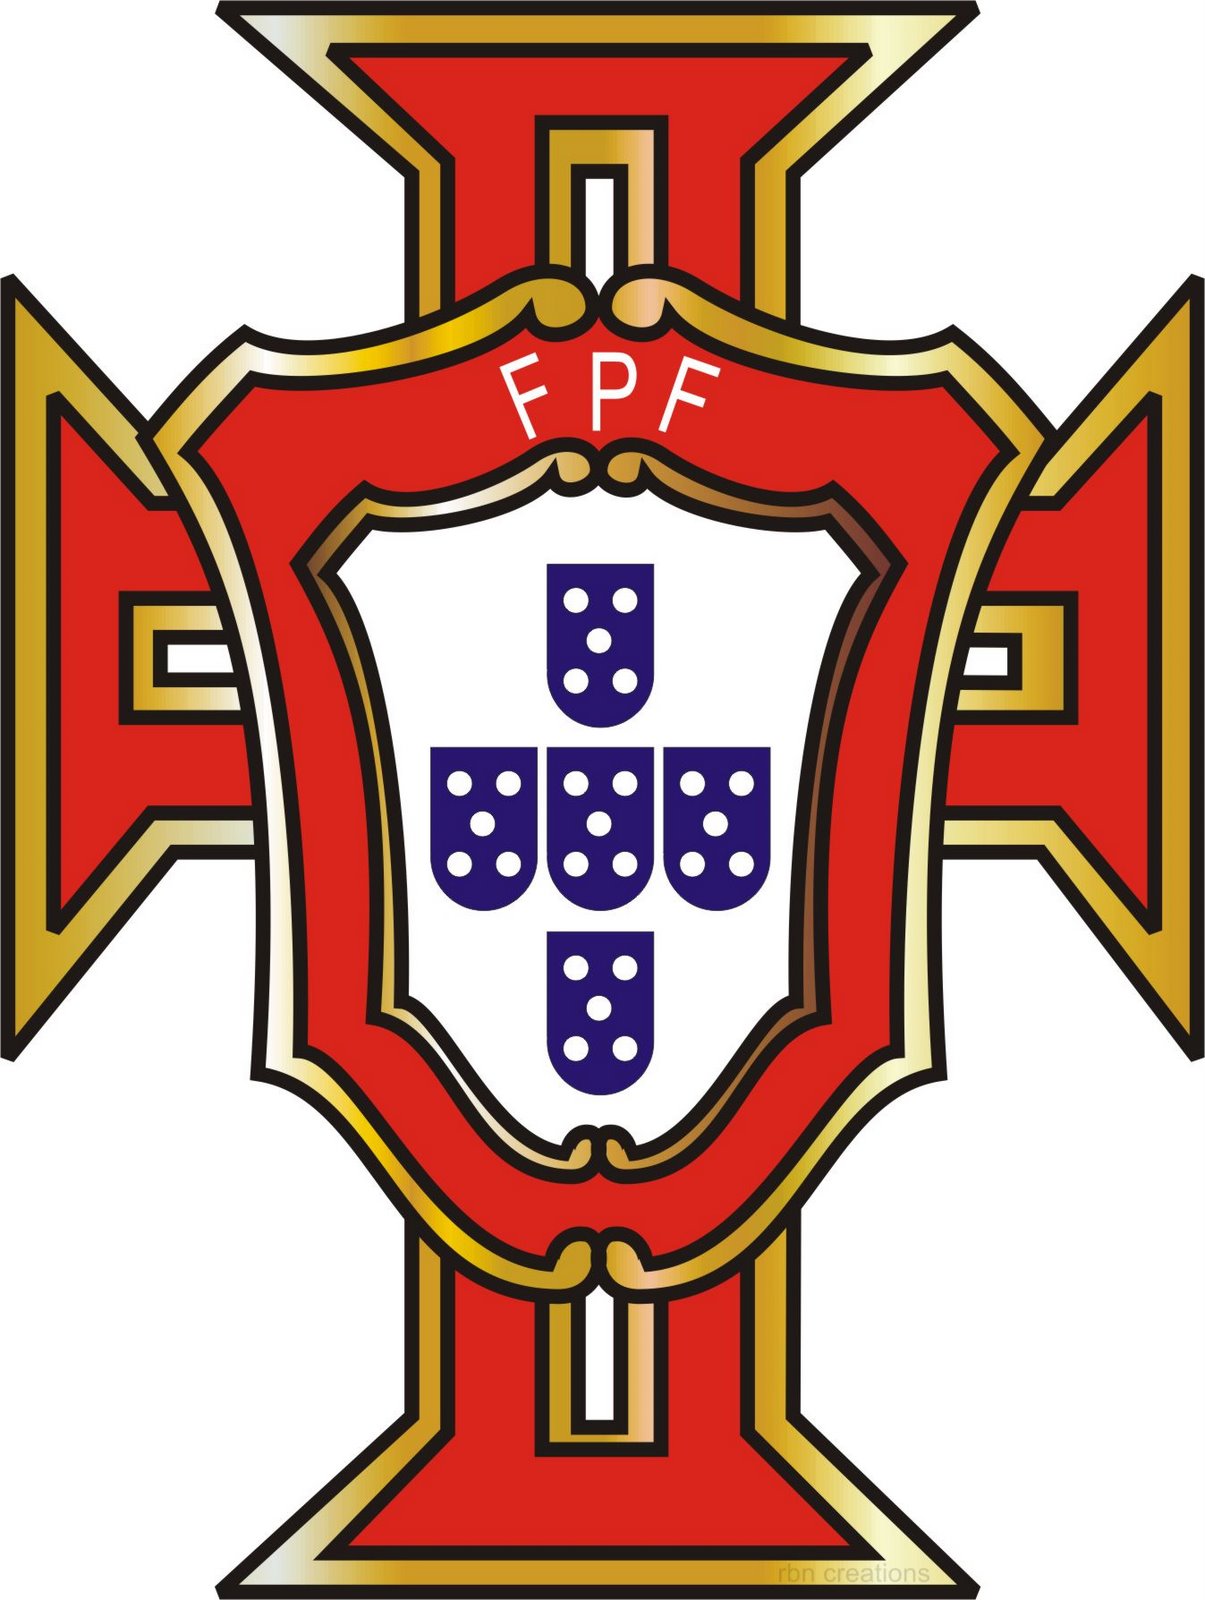 [fpf-logo.jpg]